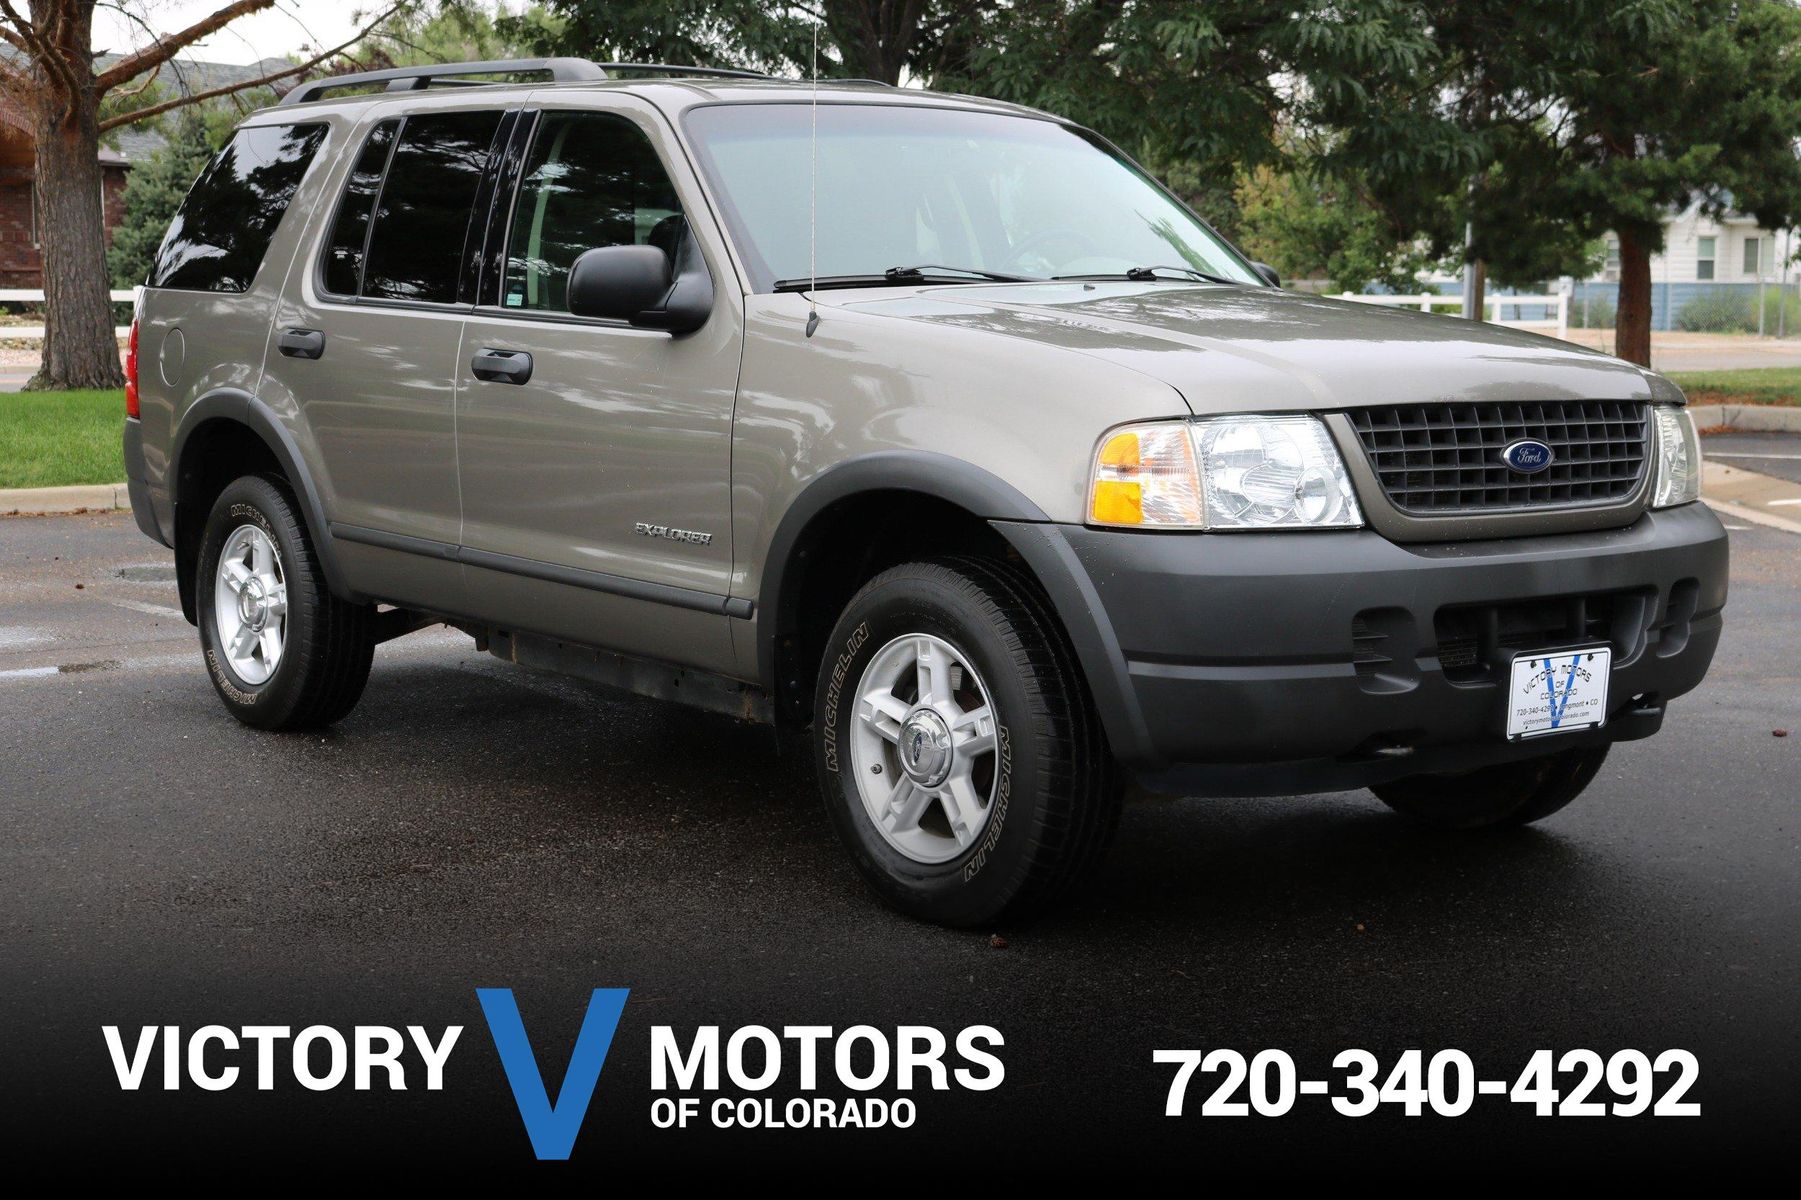 2004 Ford Explorer XLS | Victory Motors of Colorado